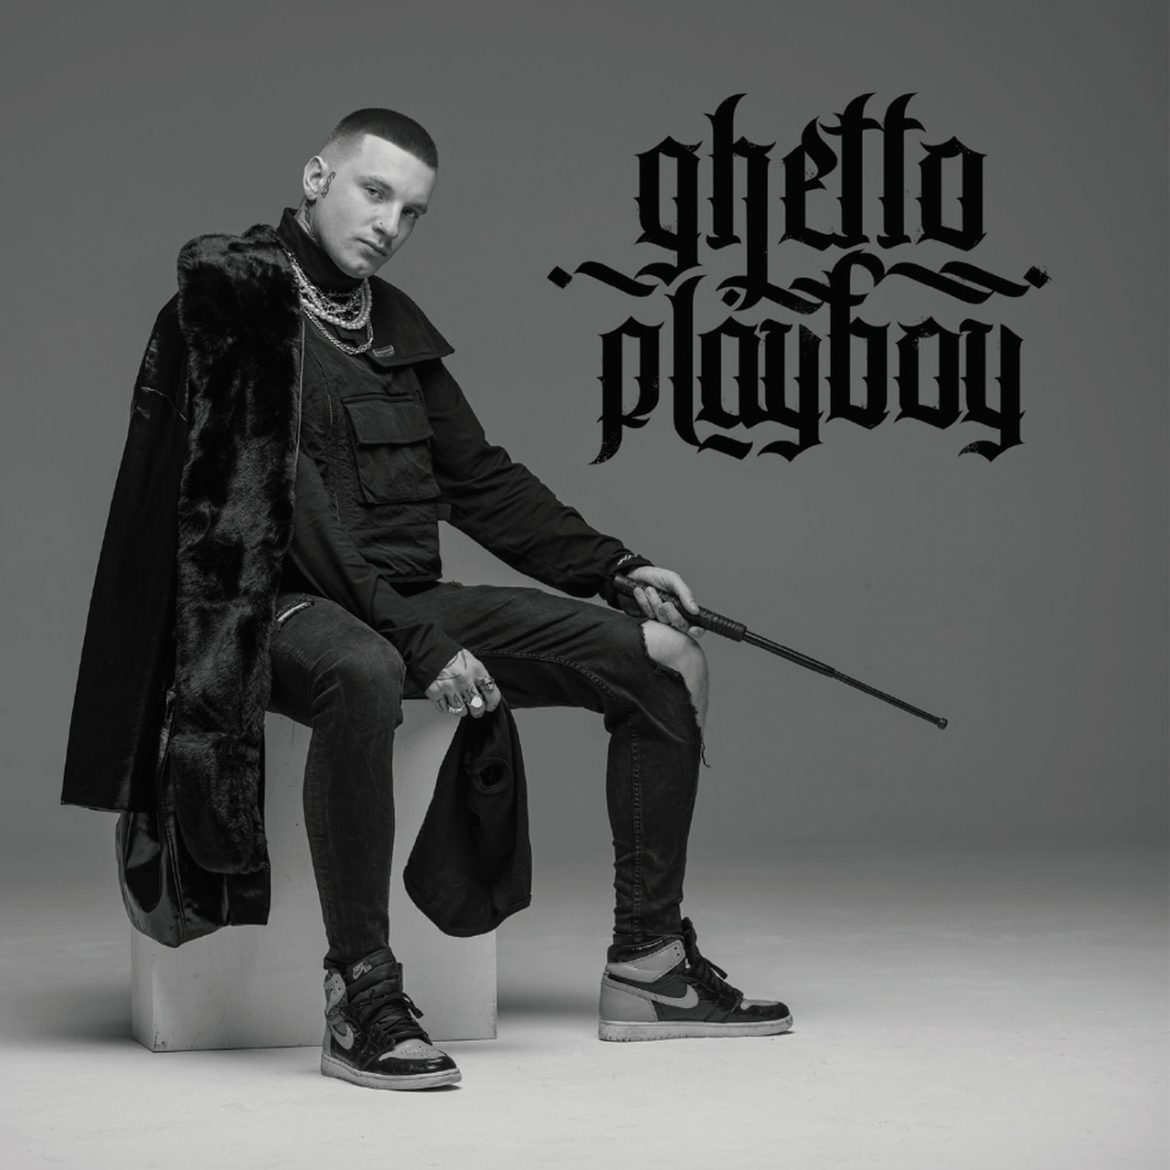 Na styku r’n’b i trapu można być w Polsce profesjonalnym, nie będąc sztucznym i bezdusznym – Marcin Flint recenzuje „Ghetto Playboya” Smolastego